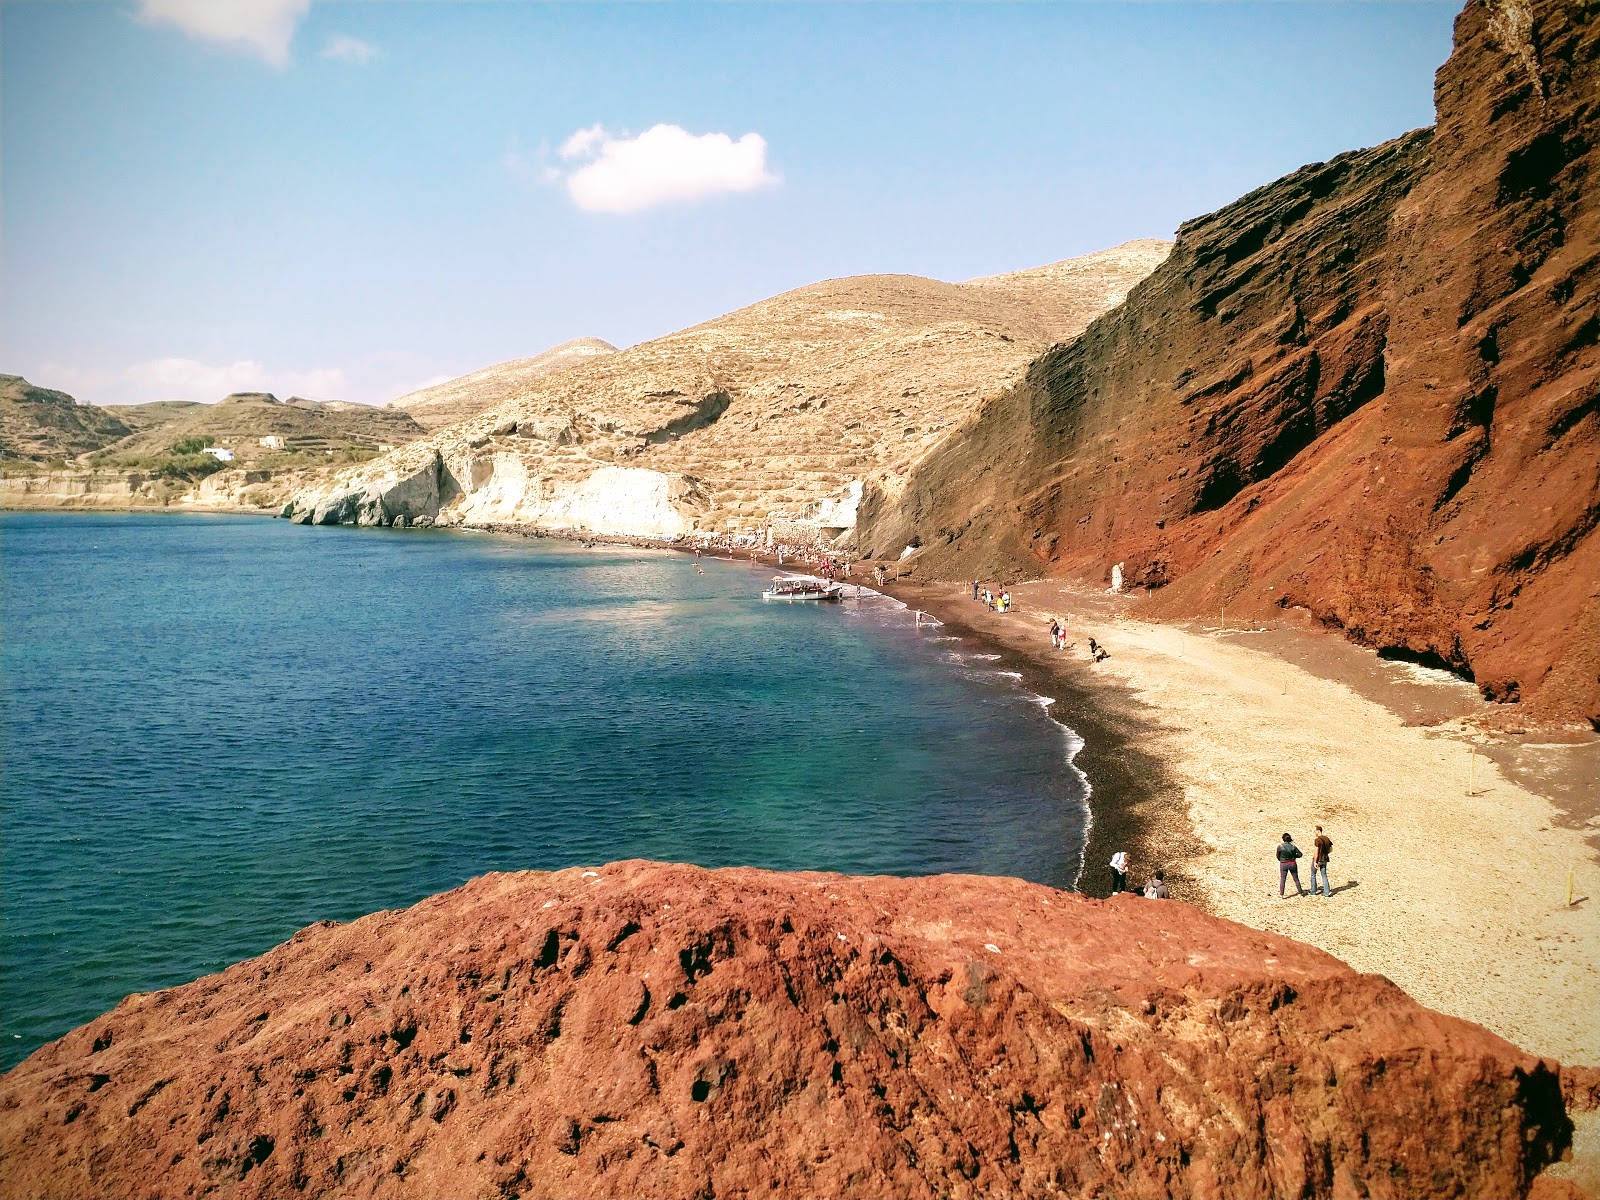 Foto von Spiaggia Rossa - beliebter Ort unter Entspannungskennern